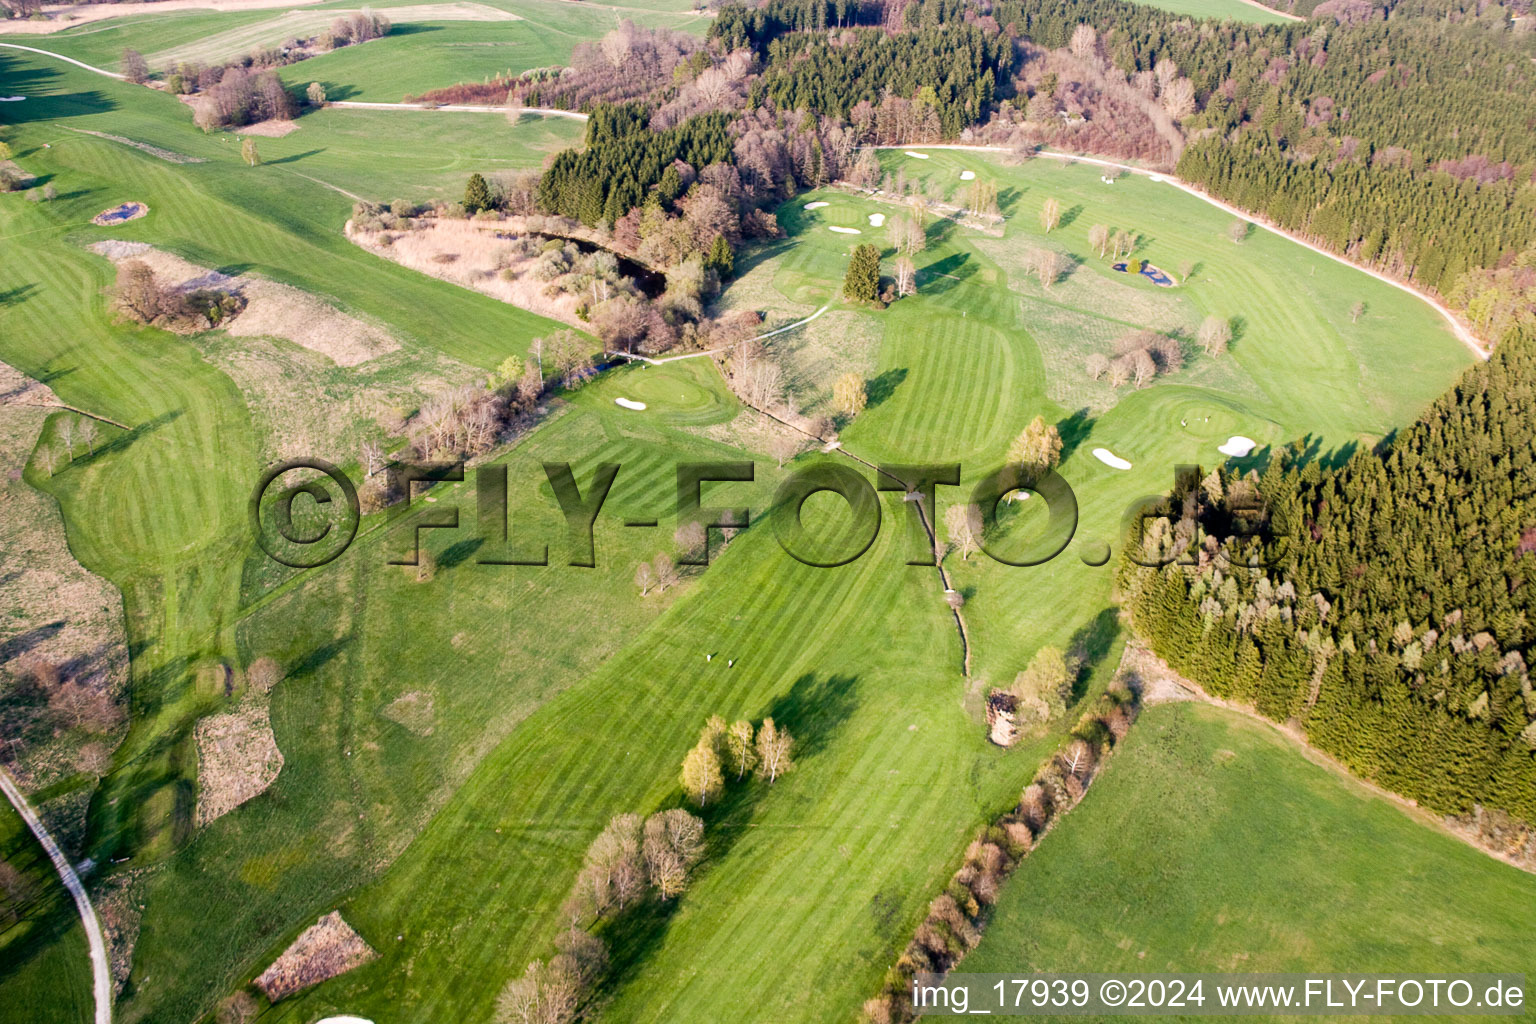 Luftbild von Gelände des Golfplatz Golf-Club Tutzing in Tutzing im Bundesland Bayern, Deutschland